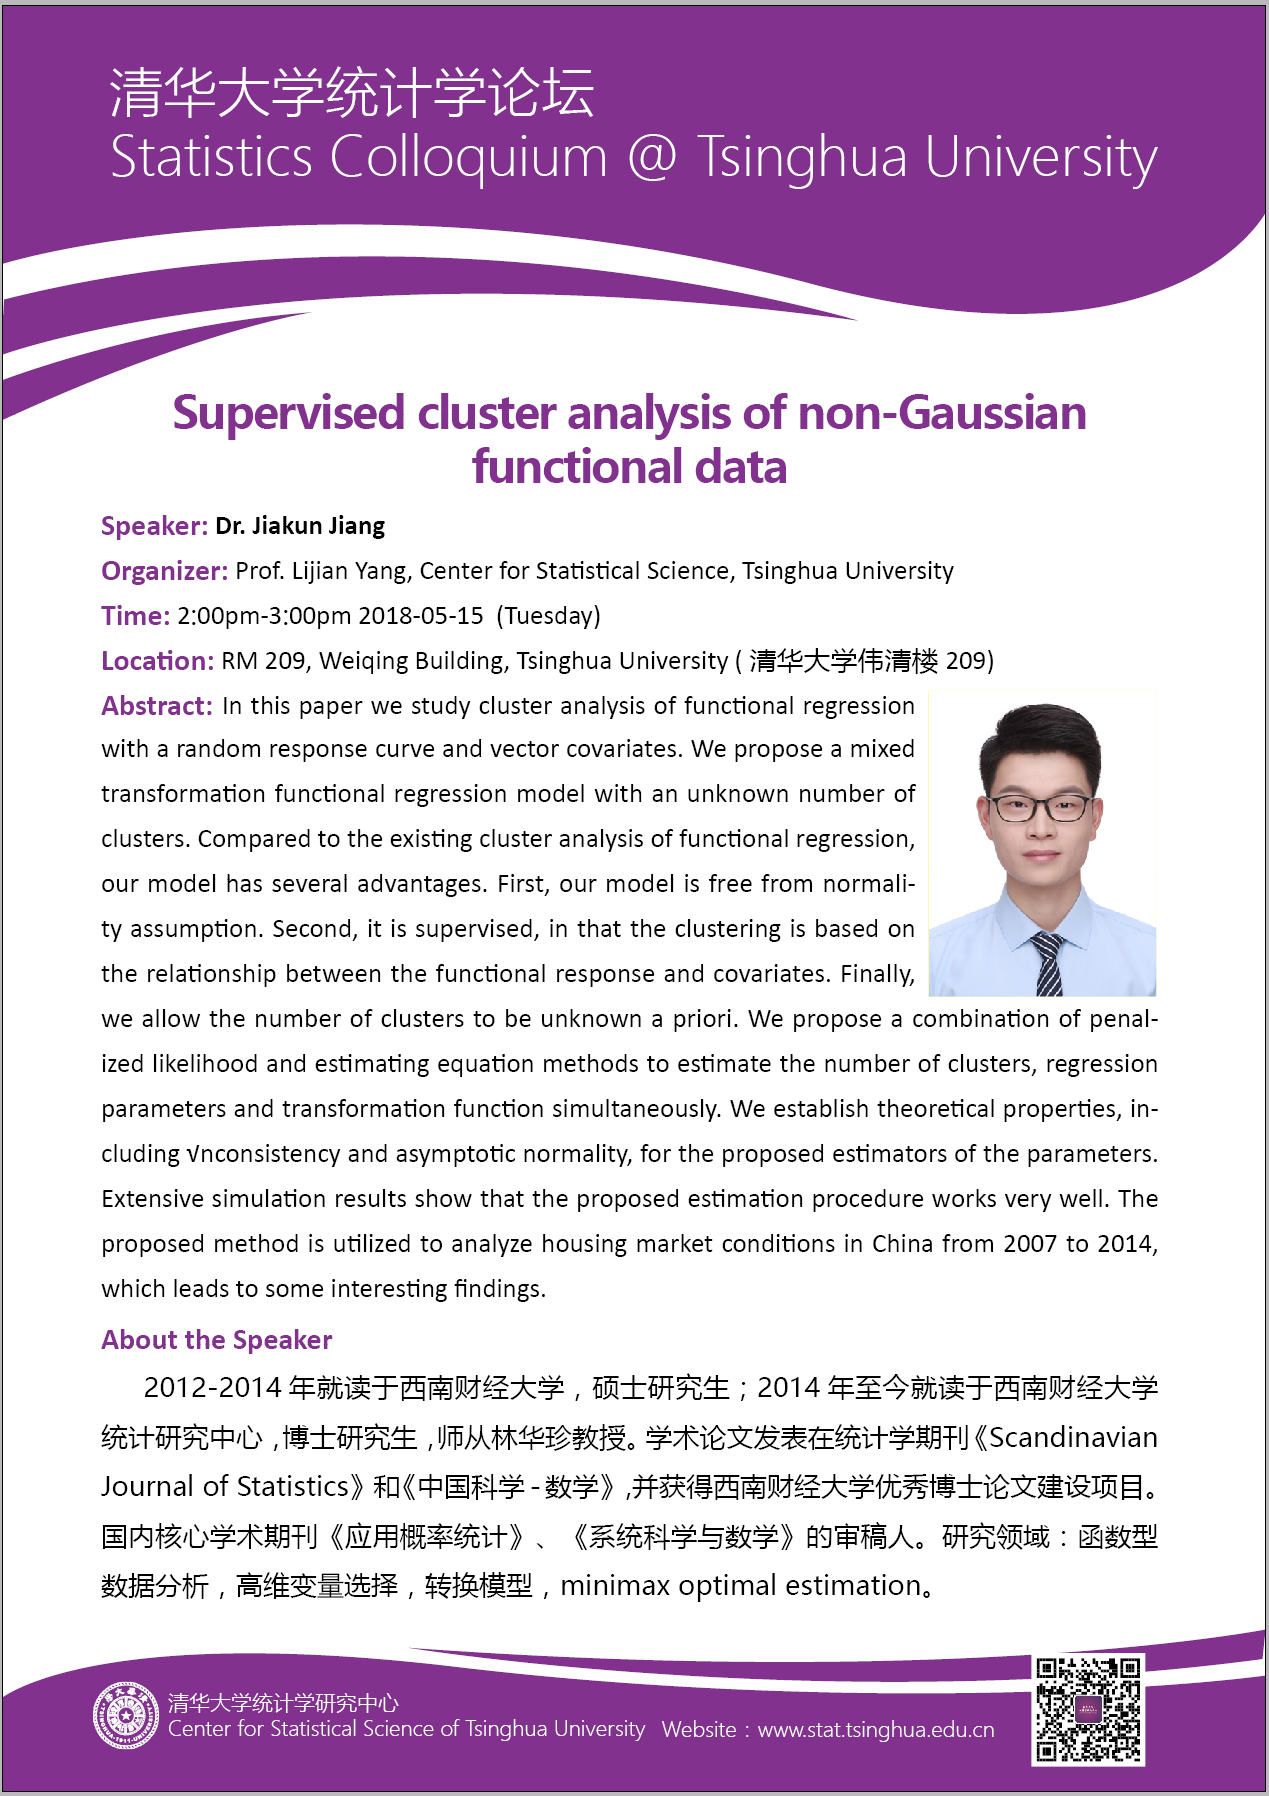 【统计学论坛】Supervised cluster analysis of non-Gaussian functional data